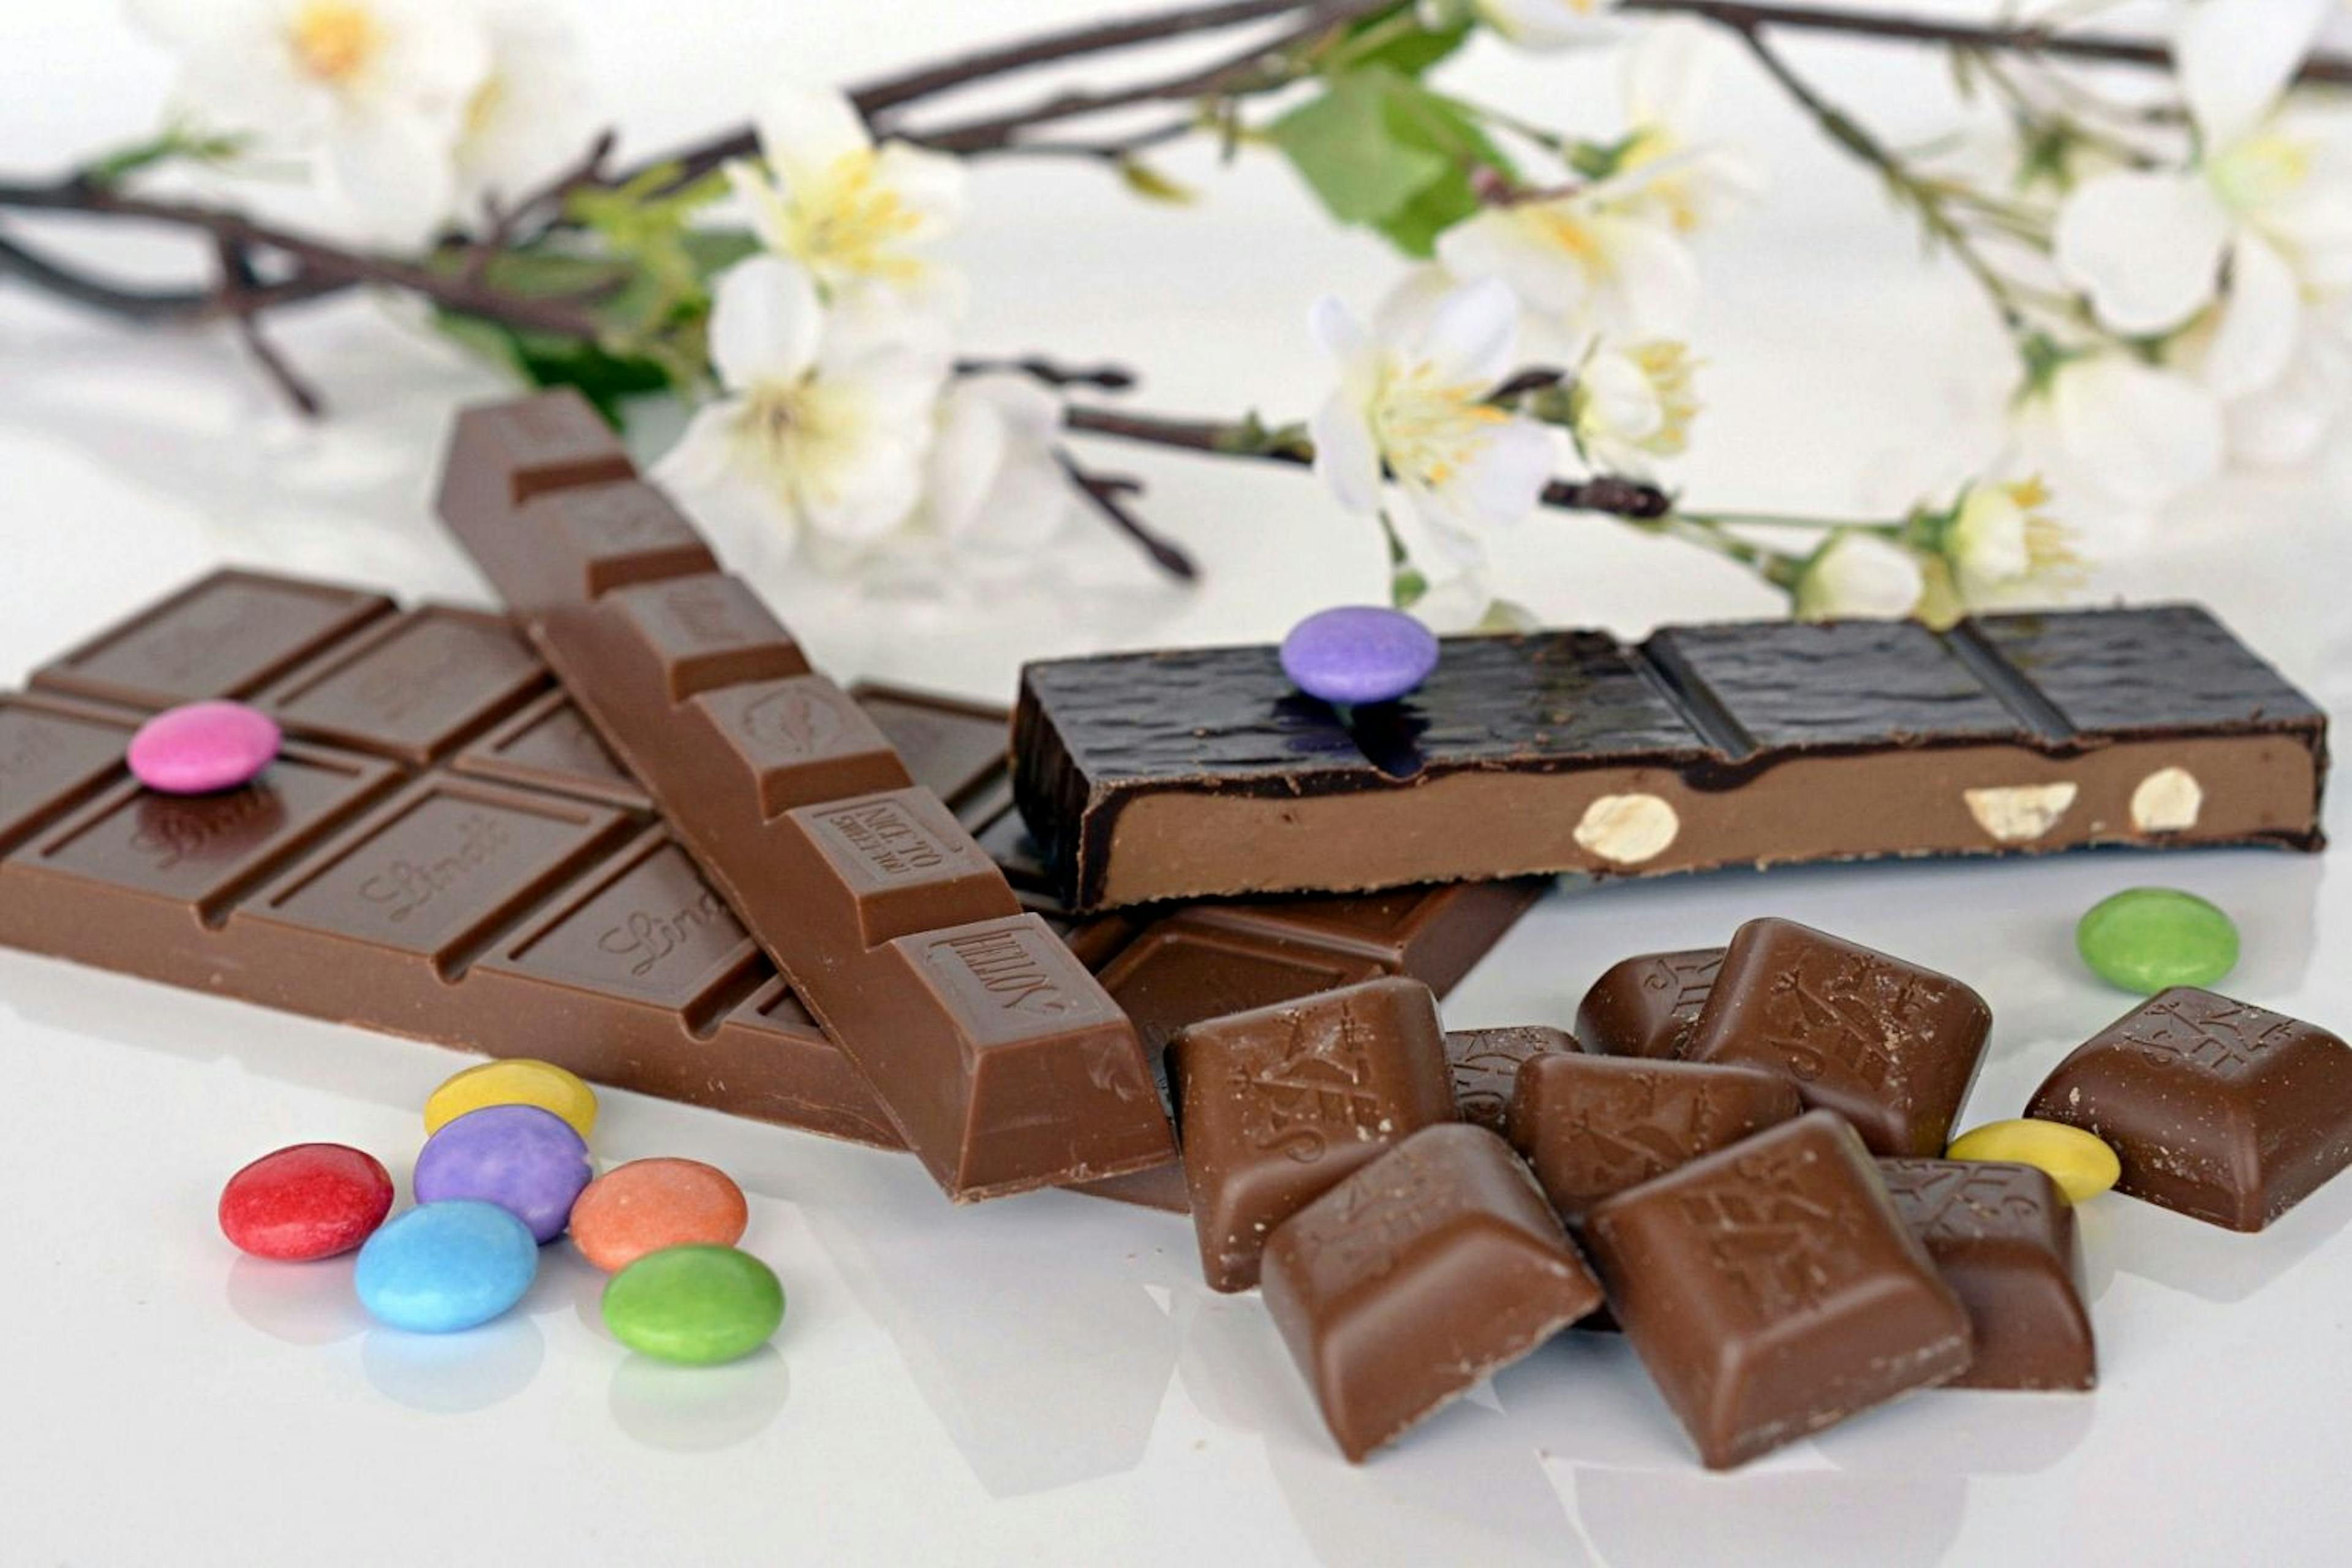 5 tablettes de chocolat LINDT Création à tester GRATUITEMENT